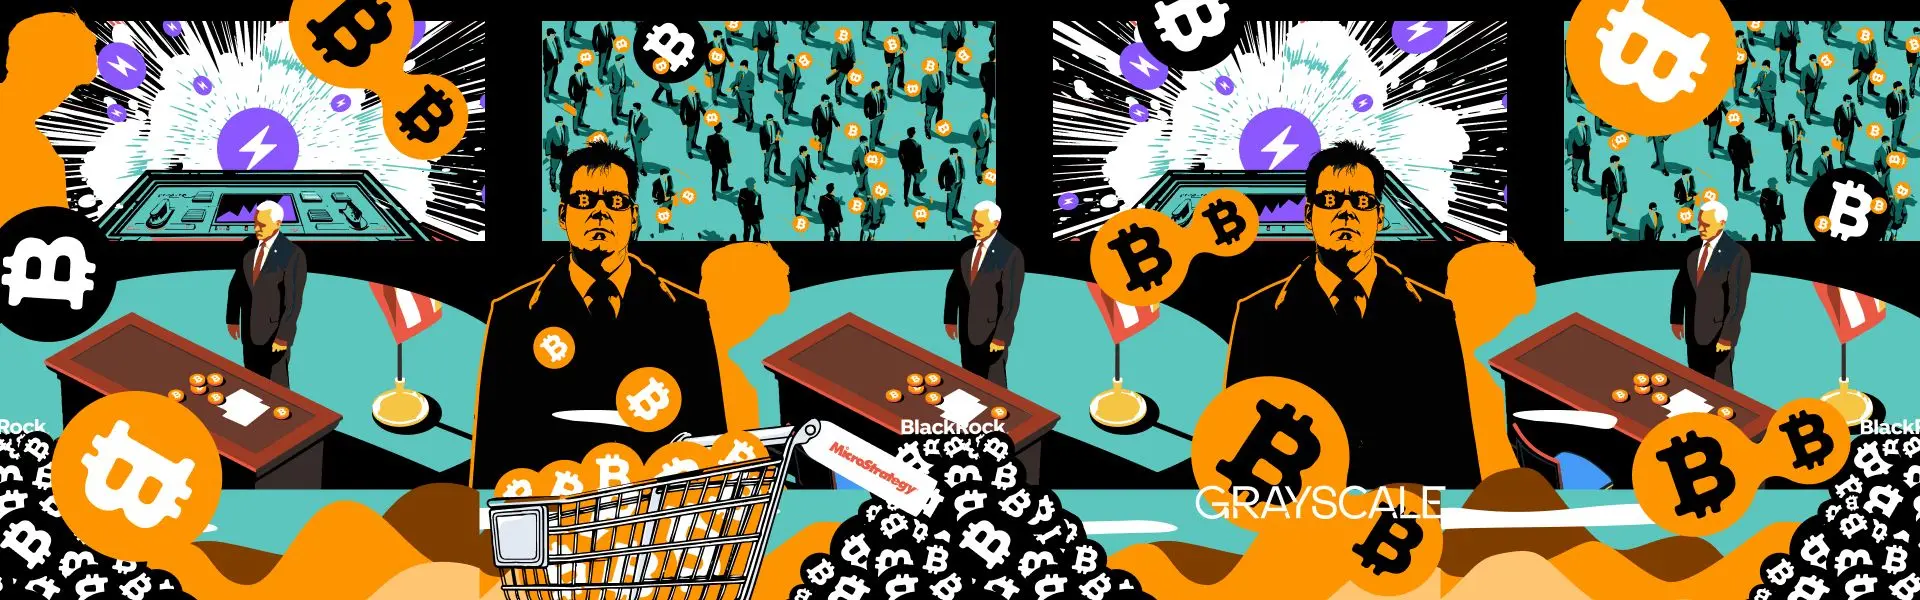 Резюме тижня: основні події у світі Bitcoin